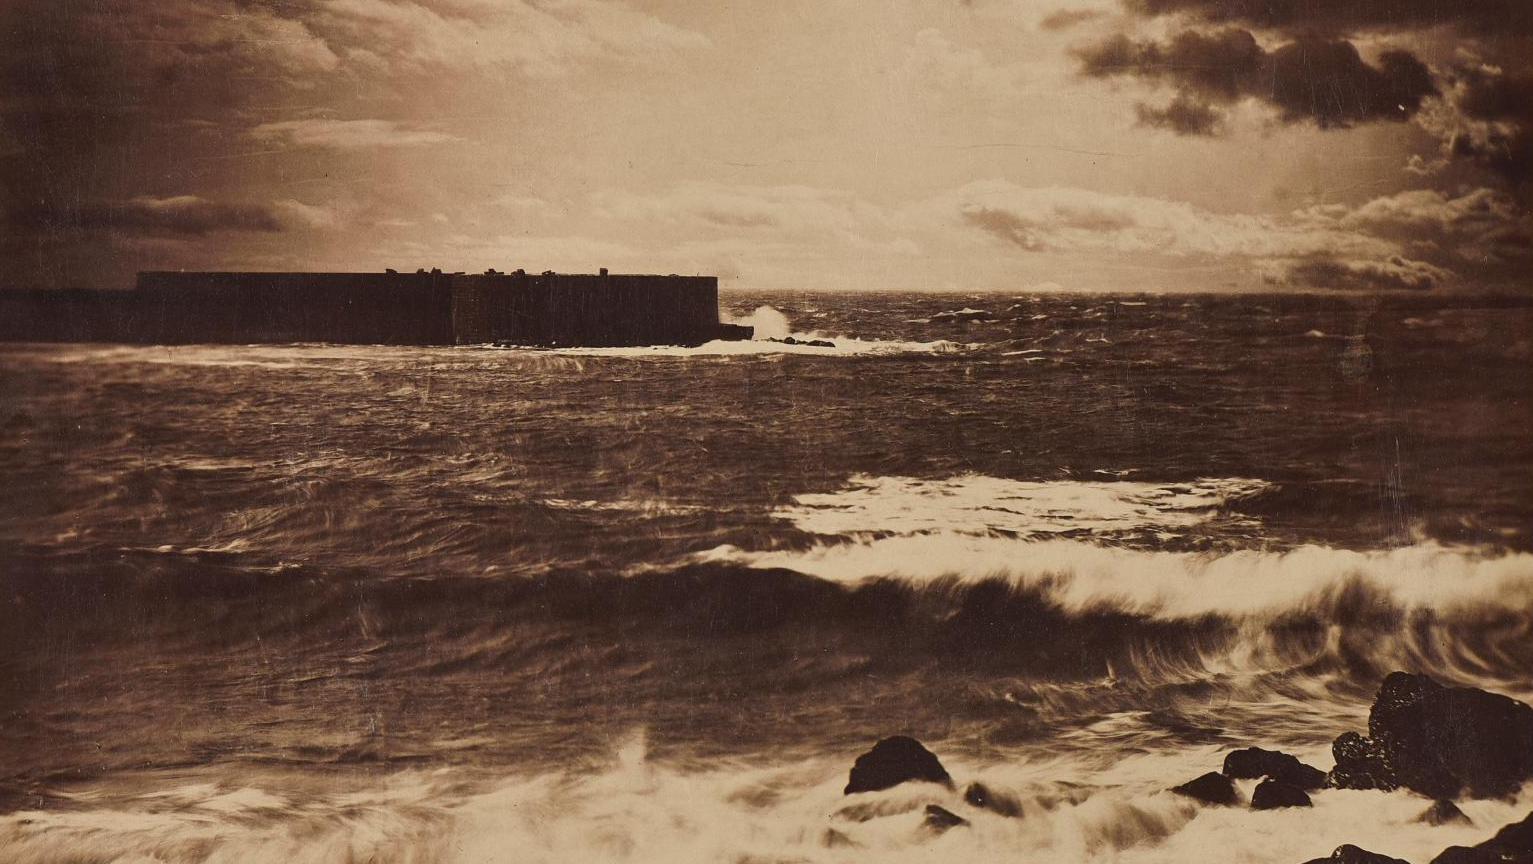 Gustave Le Gray (1820-1884), Grande vague, Sète no 17, printemps 1857, tirage albuminé... Un tsunami photographique